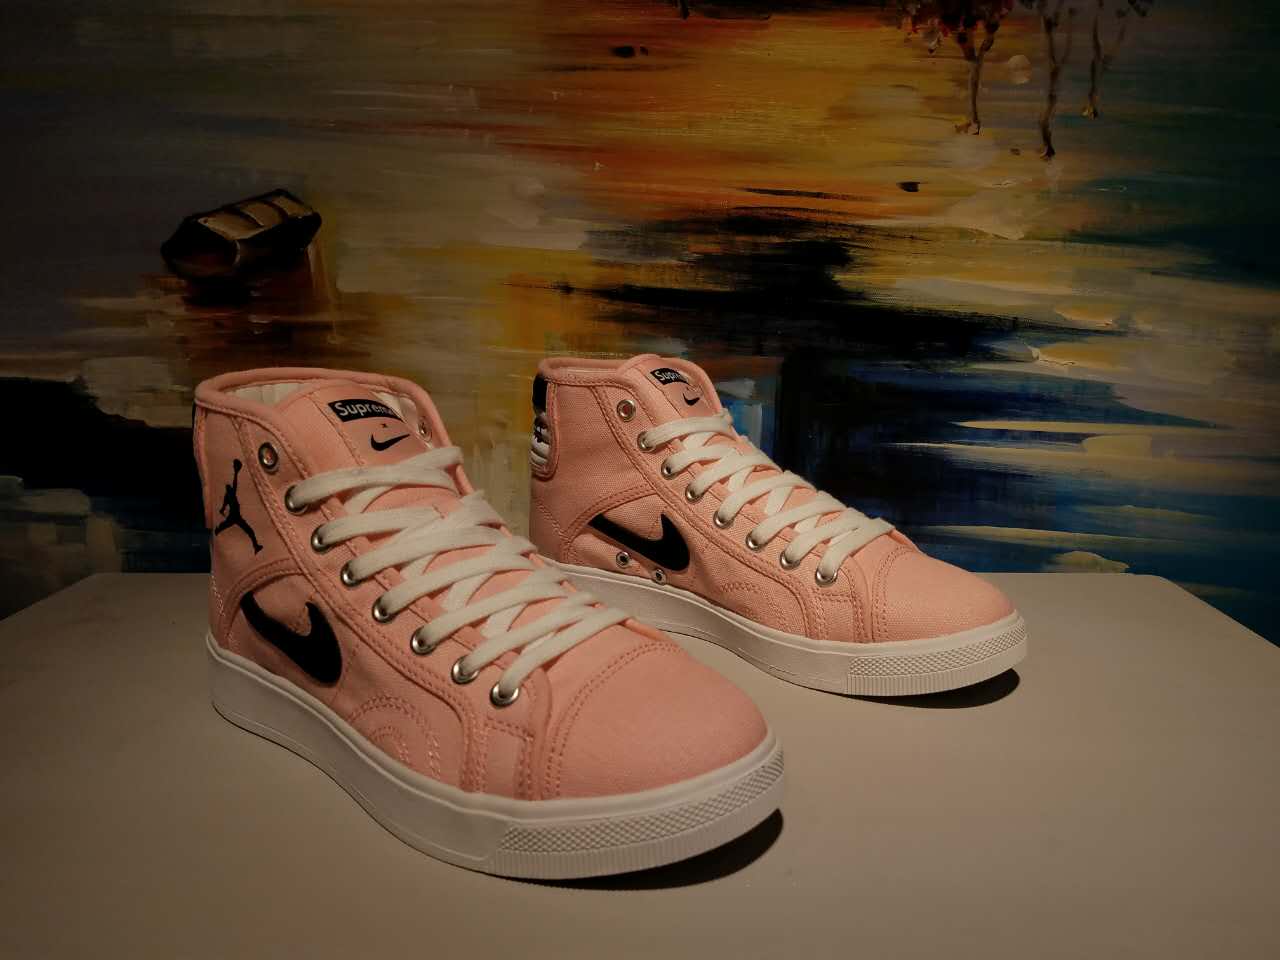 Original Air Jordan High Pink Shoes